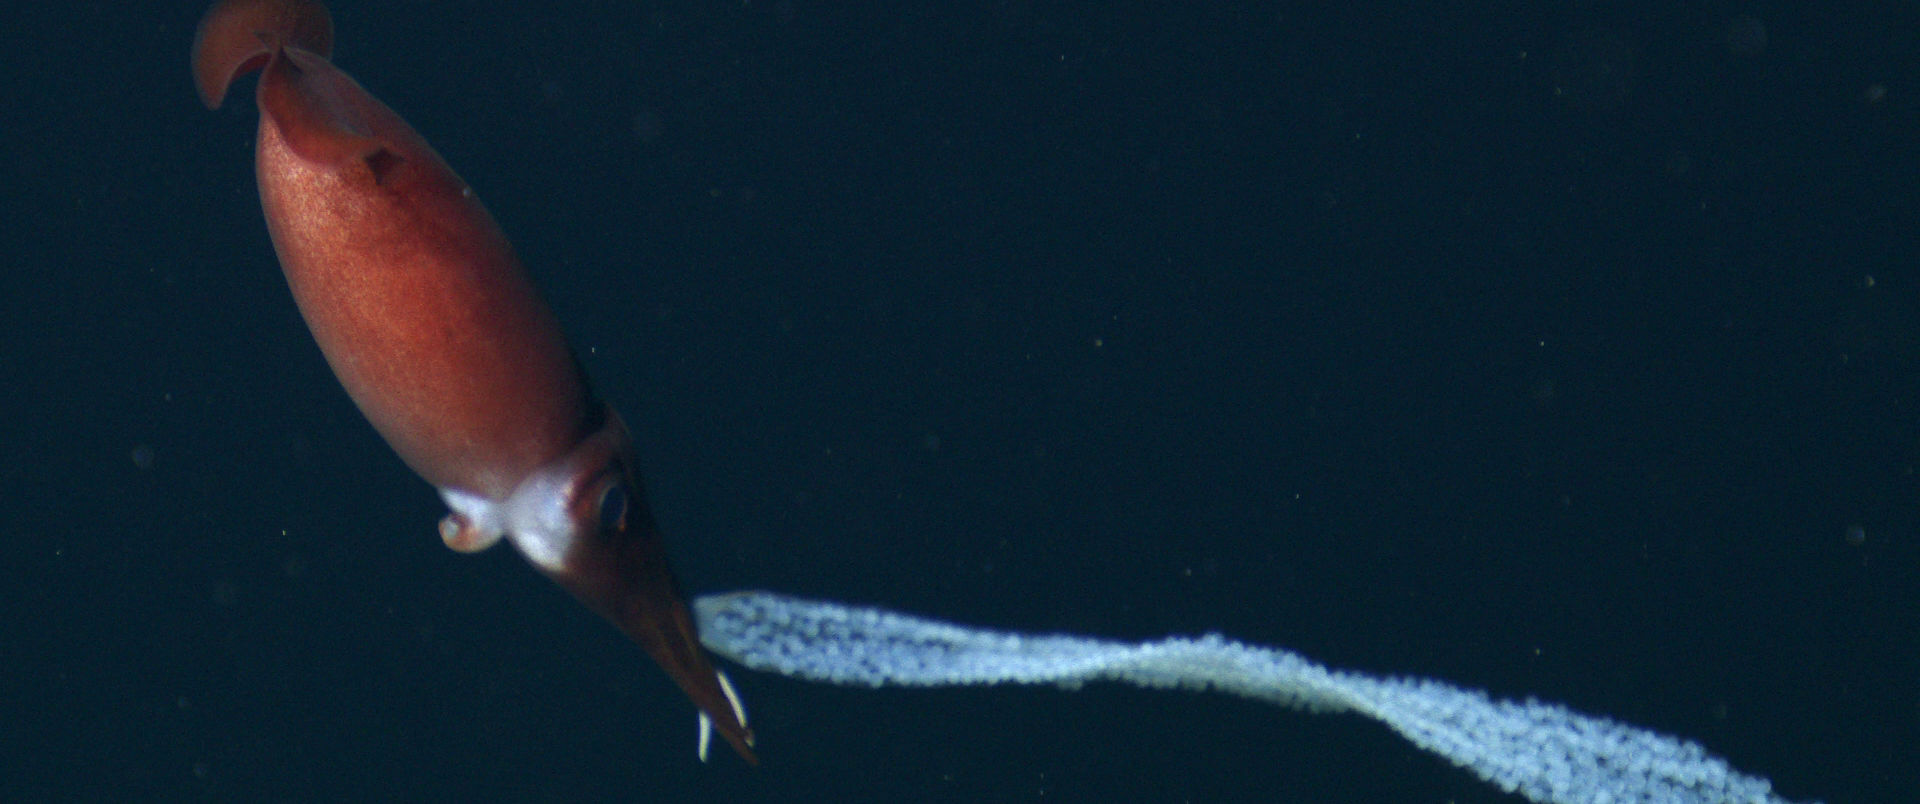 ナツメイカが深海で大量の卵をユラユラ運ぶ様子を収めた貴重なムービーが公開される Gigazine